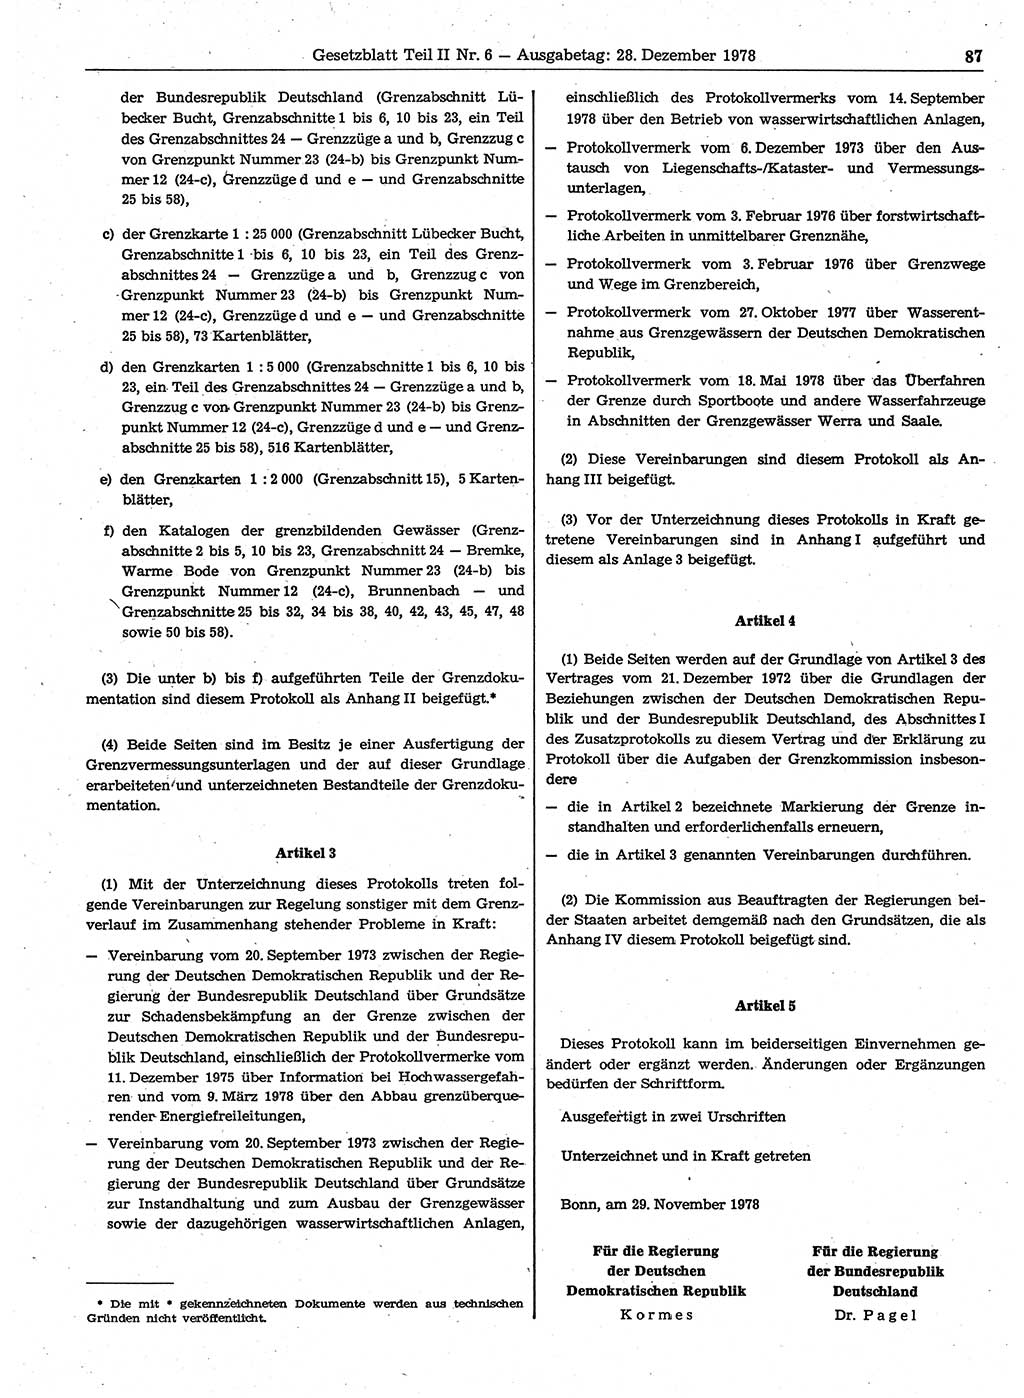 Gesetzblatt (GBl.) der Deutschen Demokratischen Republik (DDR) Teil ⅠⅠ 1978, Seite 87 (GBl. DDR ⅠⅠ 1978, S. 87)